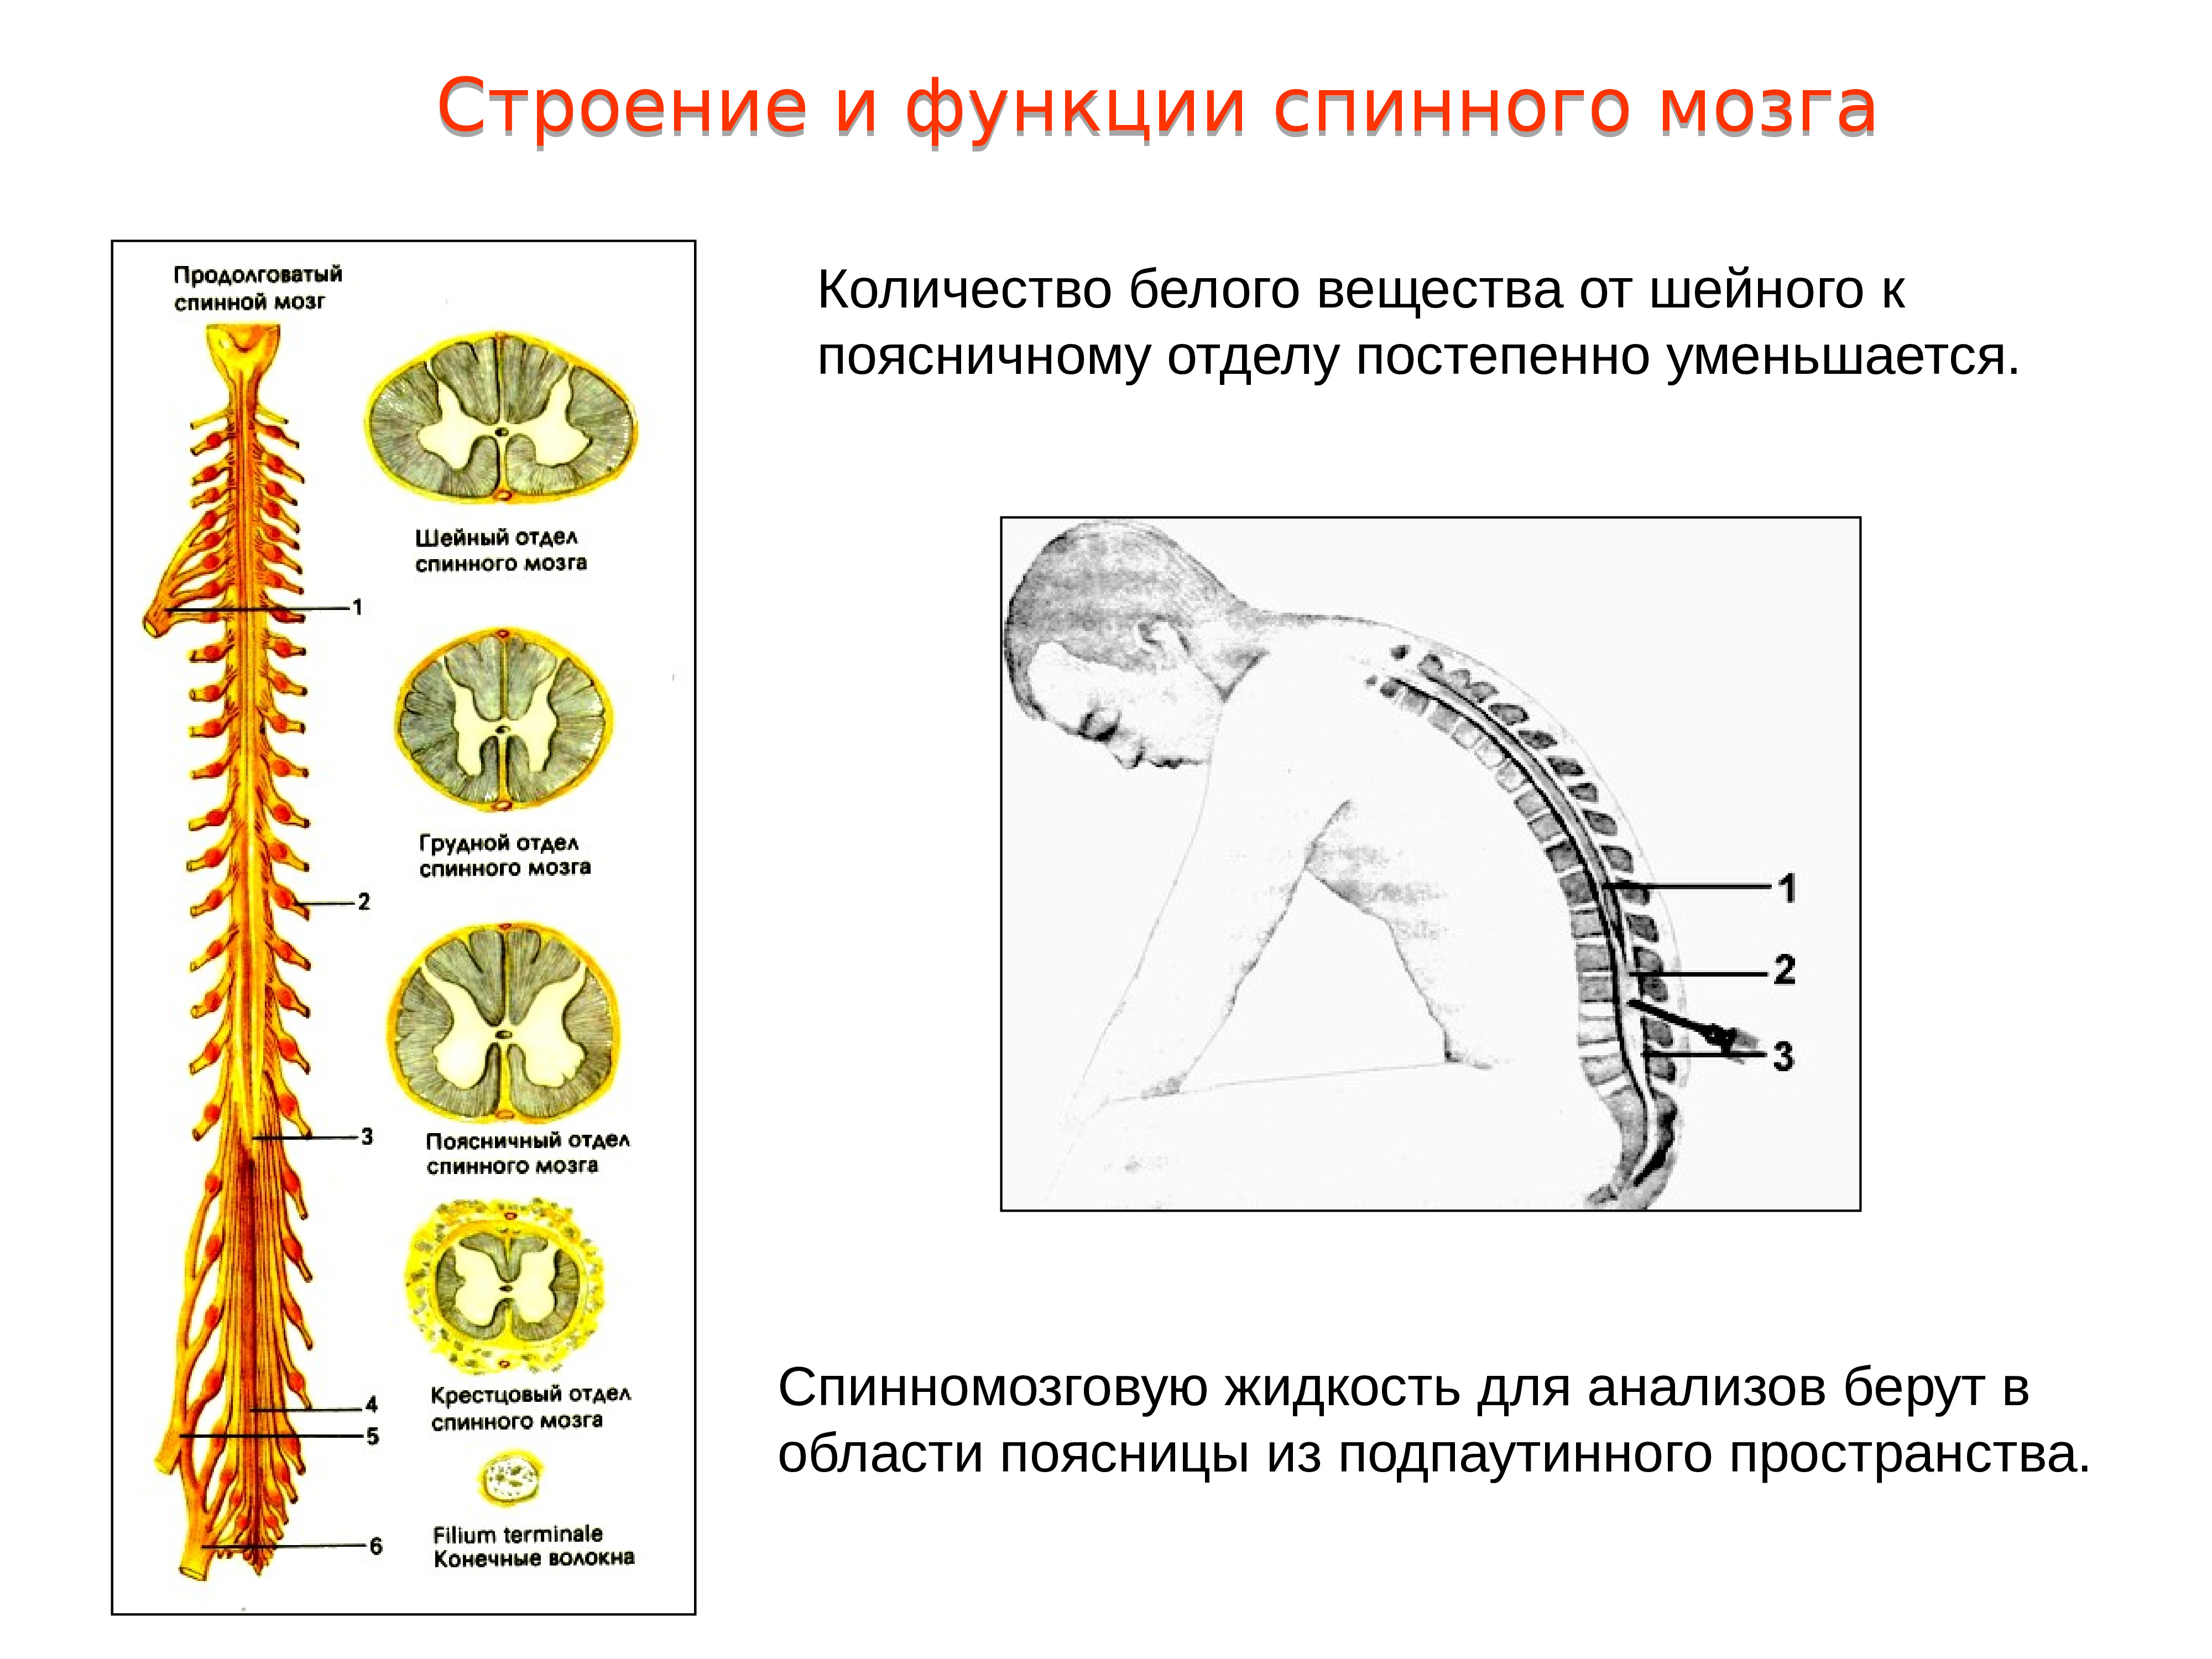 Строение спинного мозга человека